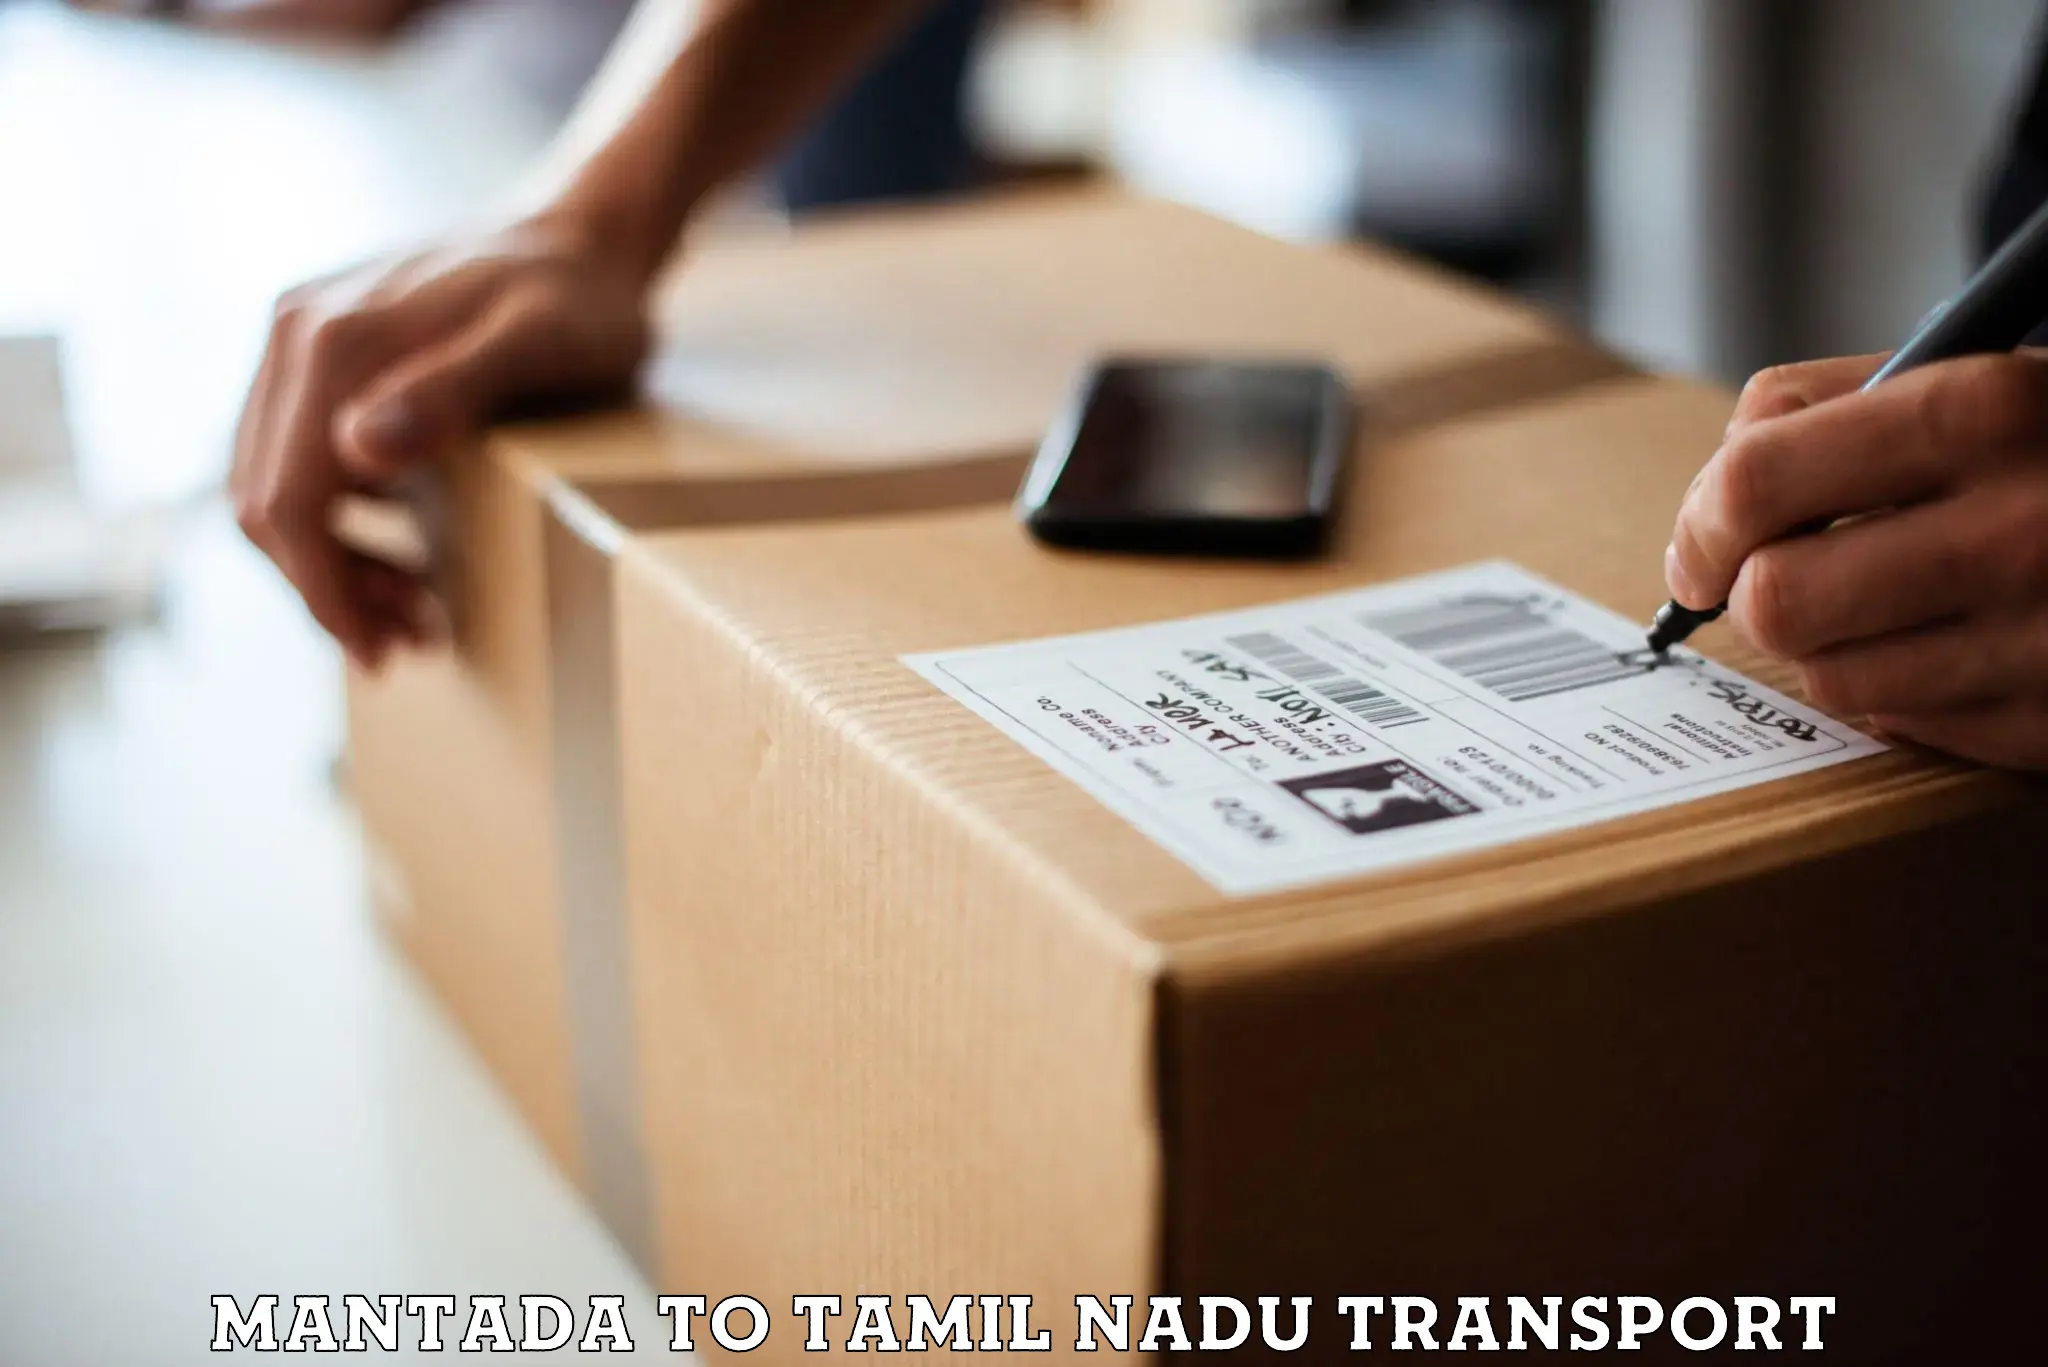 Transportation solution services Mantada to Tamil Nadu